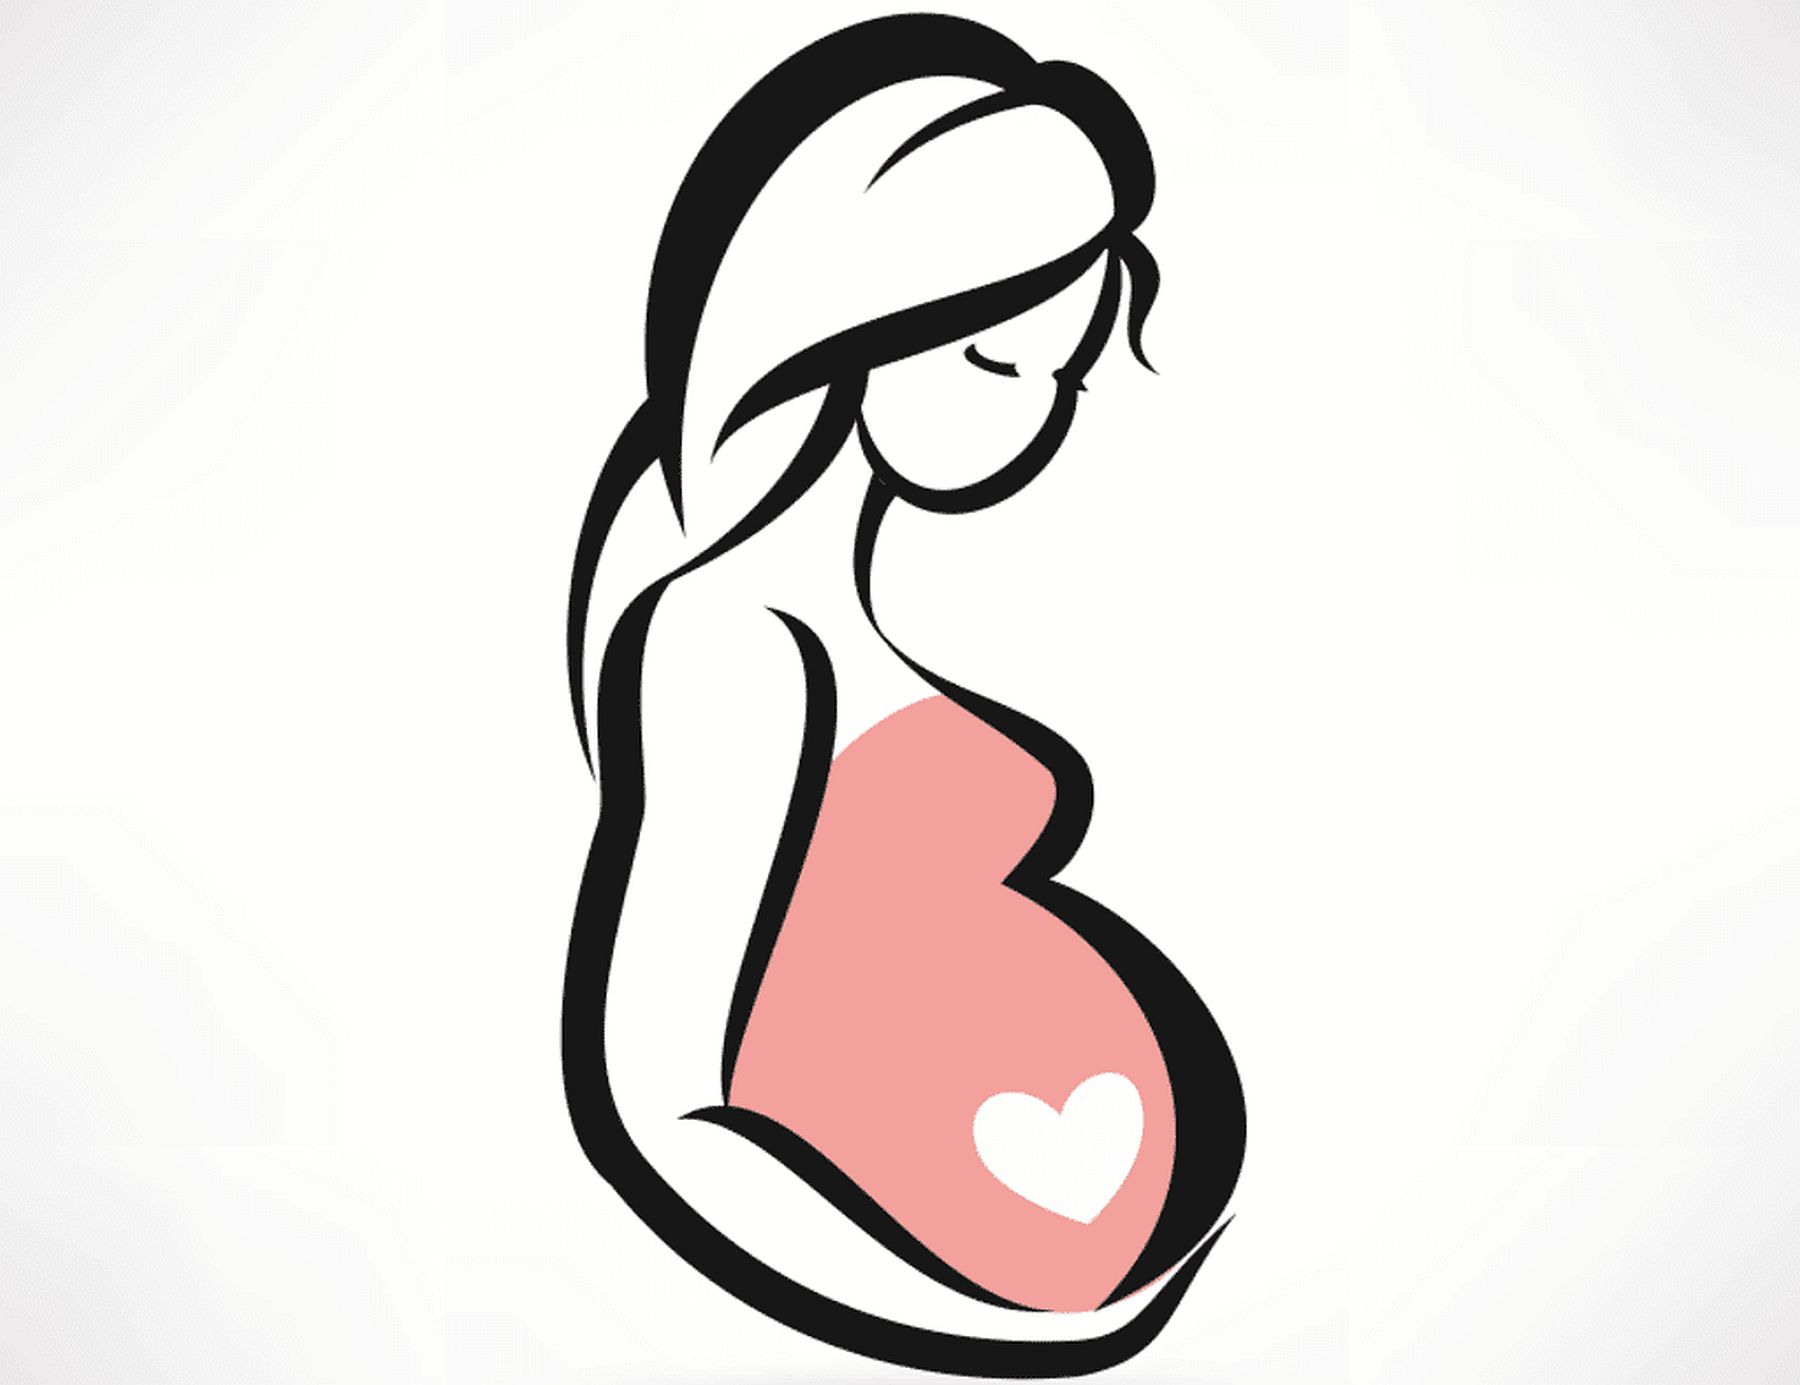 Online dietetikai tanácsadást szervez kismamáknak az Egészségfejlesztési Iroda